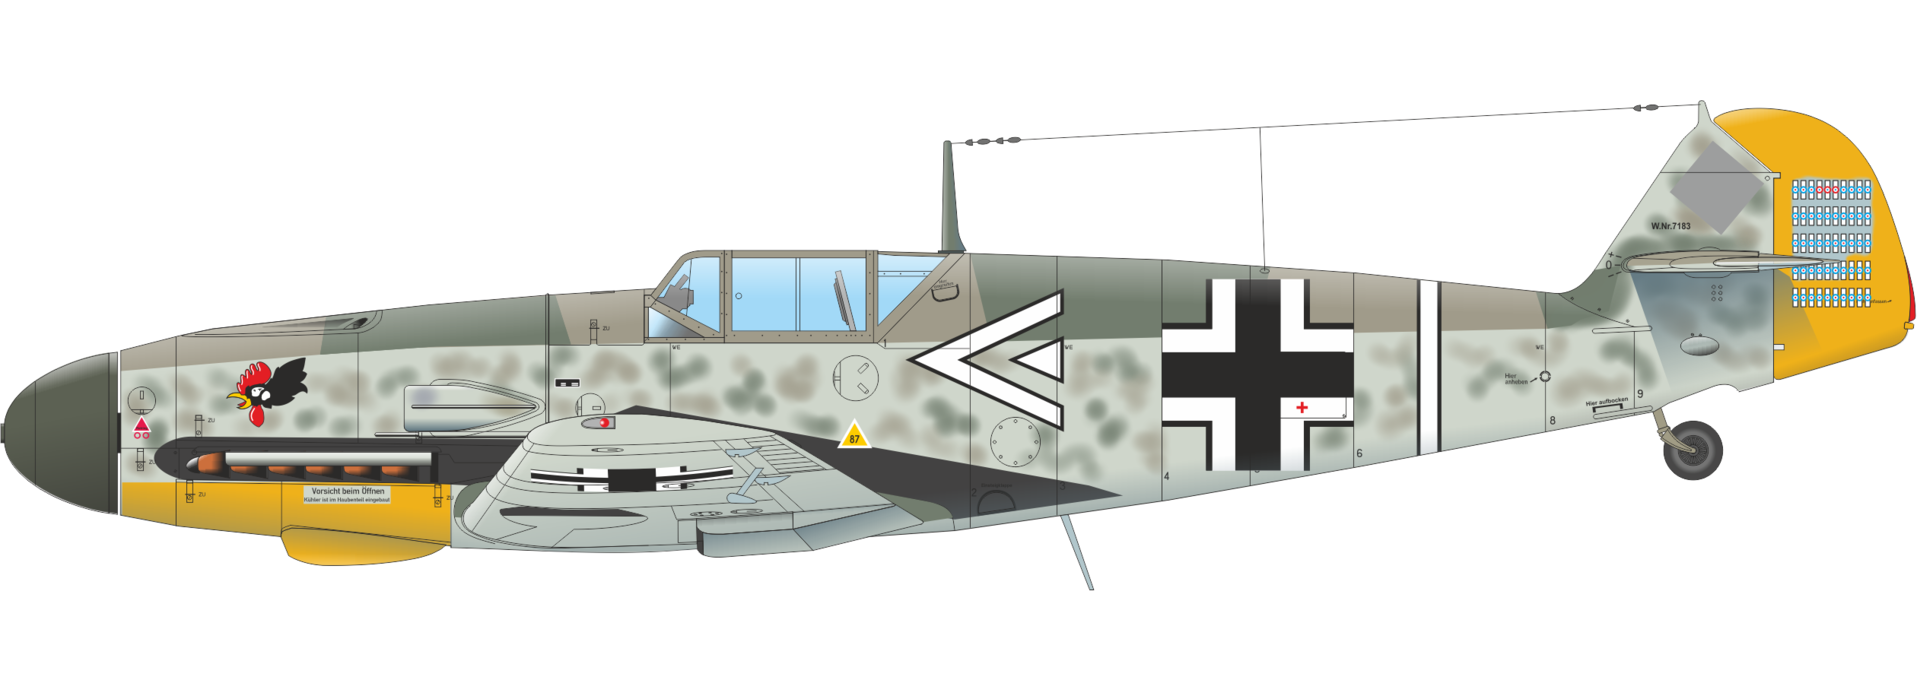 Eduard Edua648329 Bf 109f Seat Early 1/48 